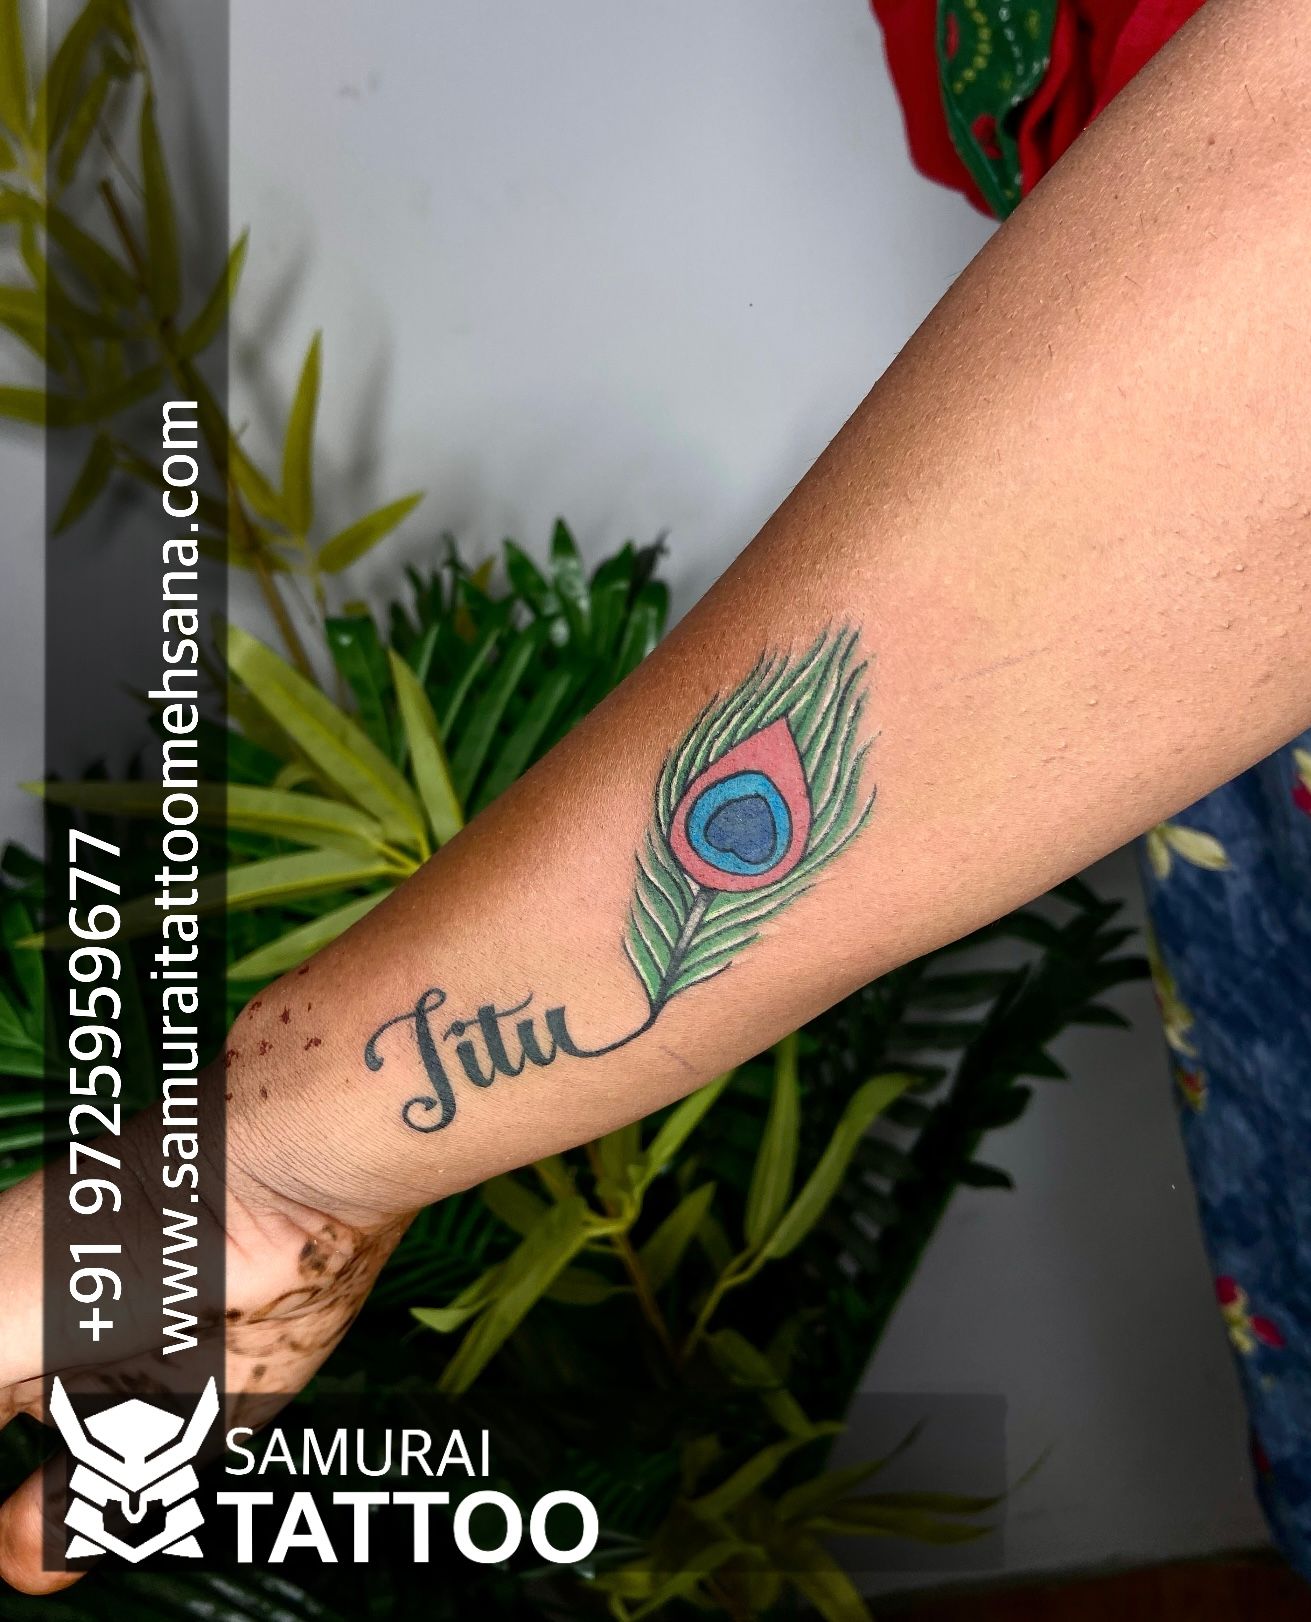 Pin by Jitendra Kumar on jeetu | Tattoo quotes, Fish tattoos, Tattoos